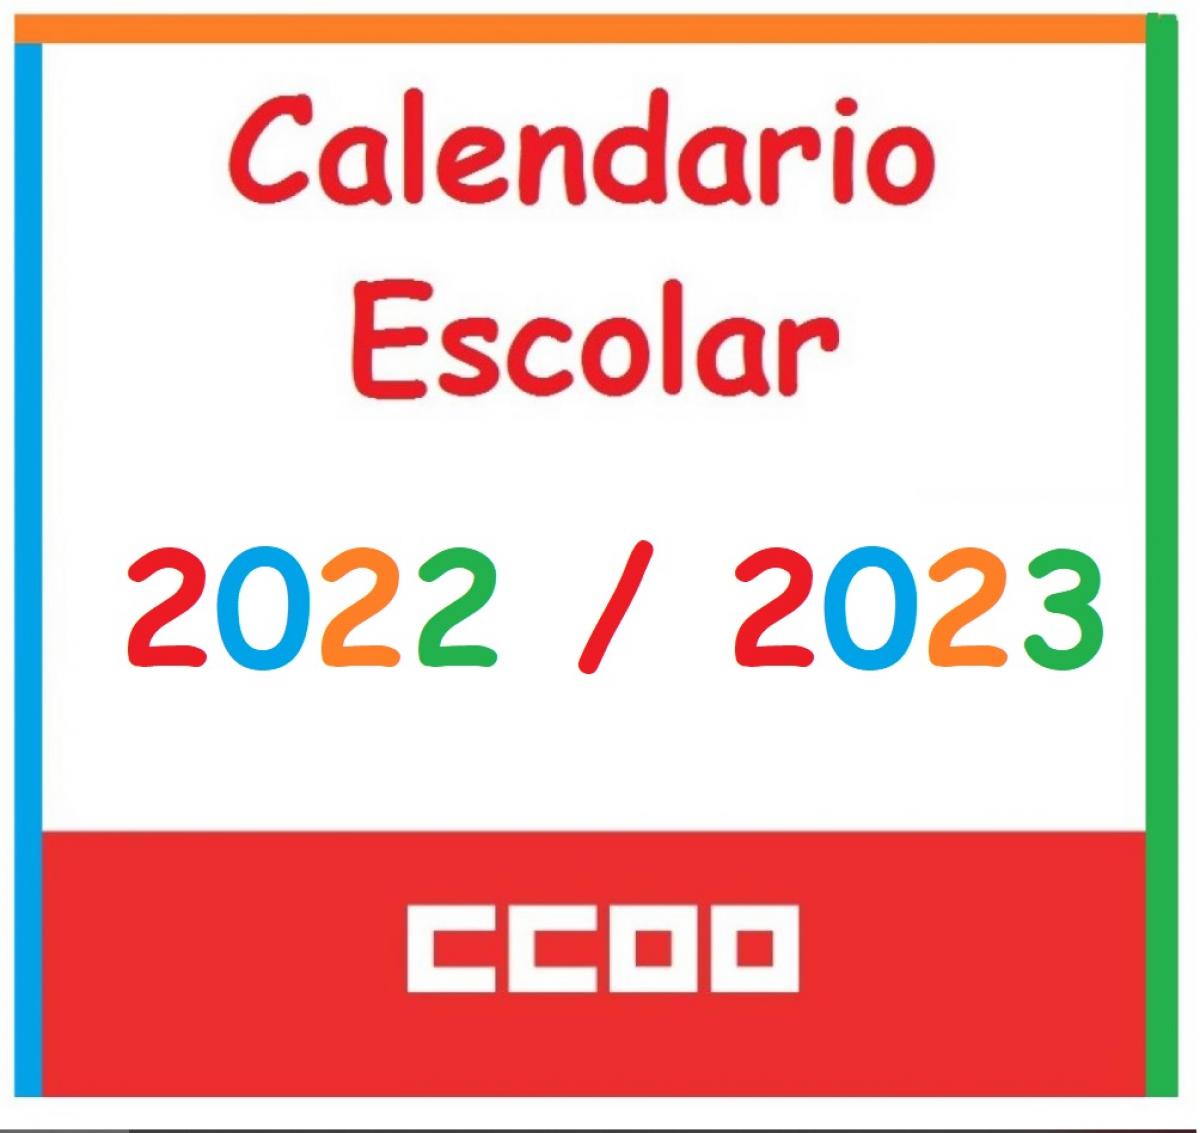 Calendario escolar 2022/2023